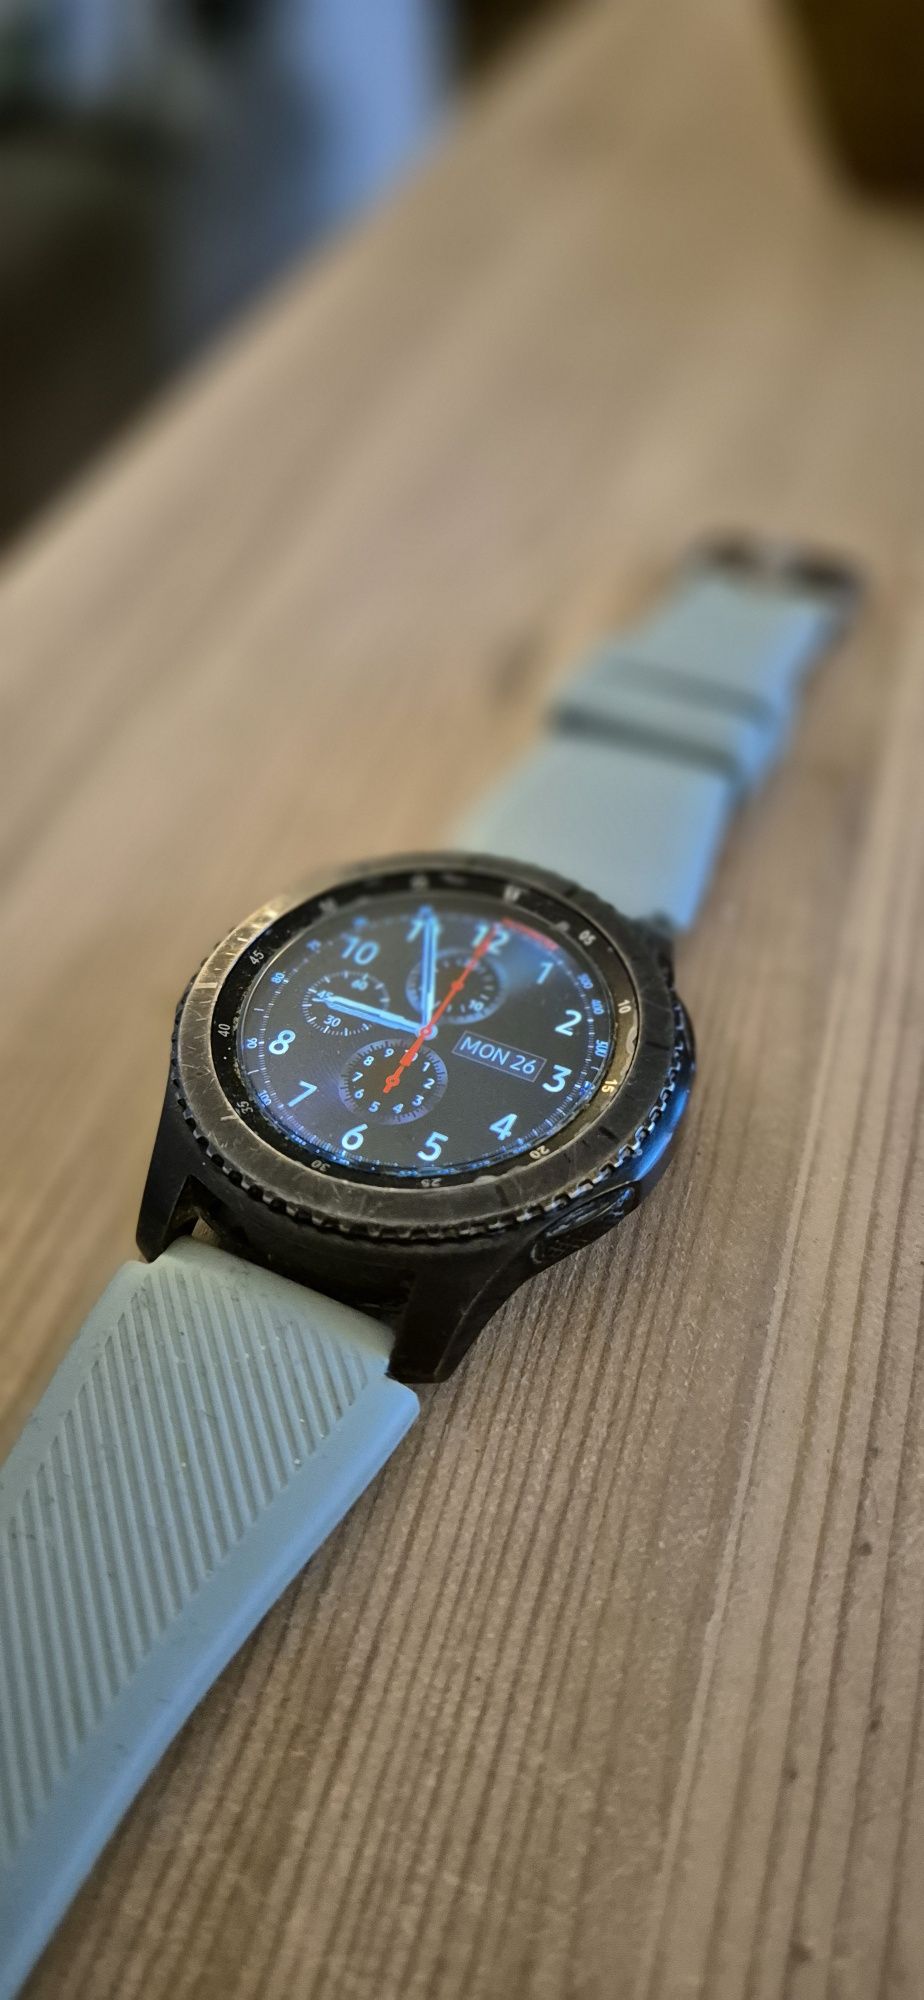 Samsung smartwatch zegarek  frontier s3